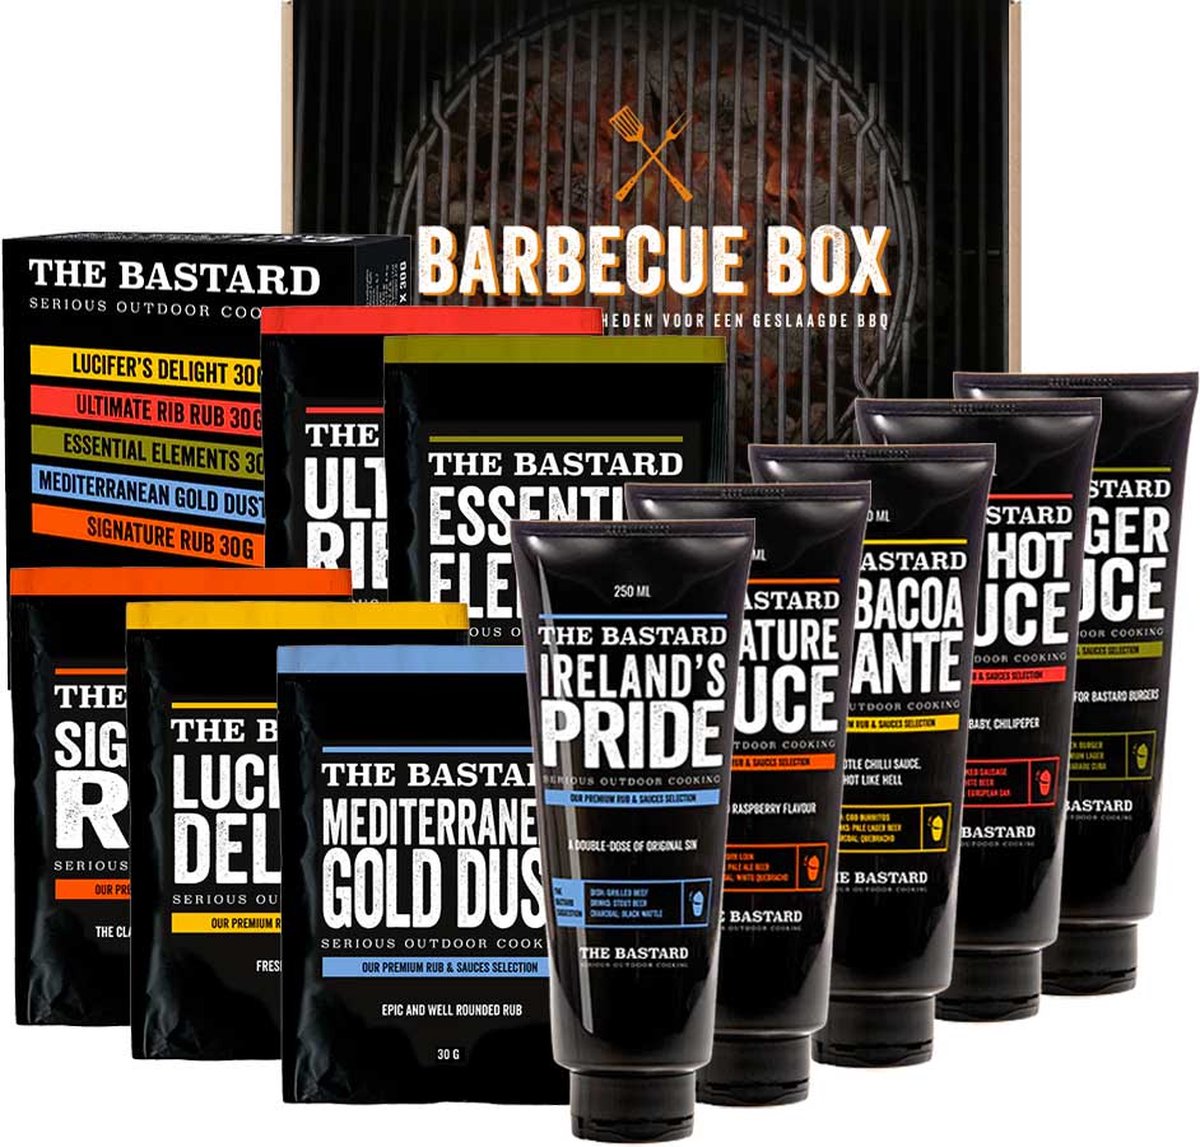 Barbecue pakket met alle sauzen en rubs van The Bastard | BBQ pakket cadeau - Cadeaumakers